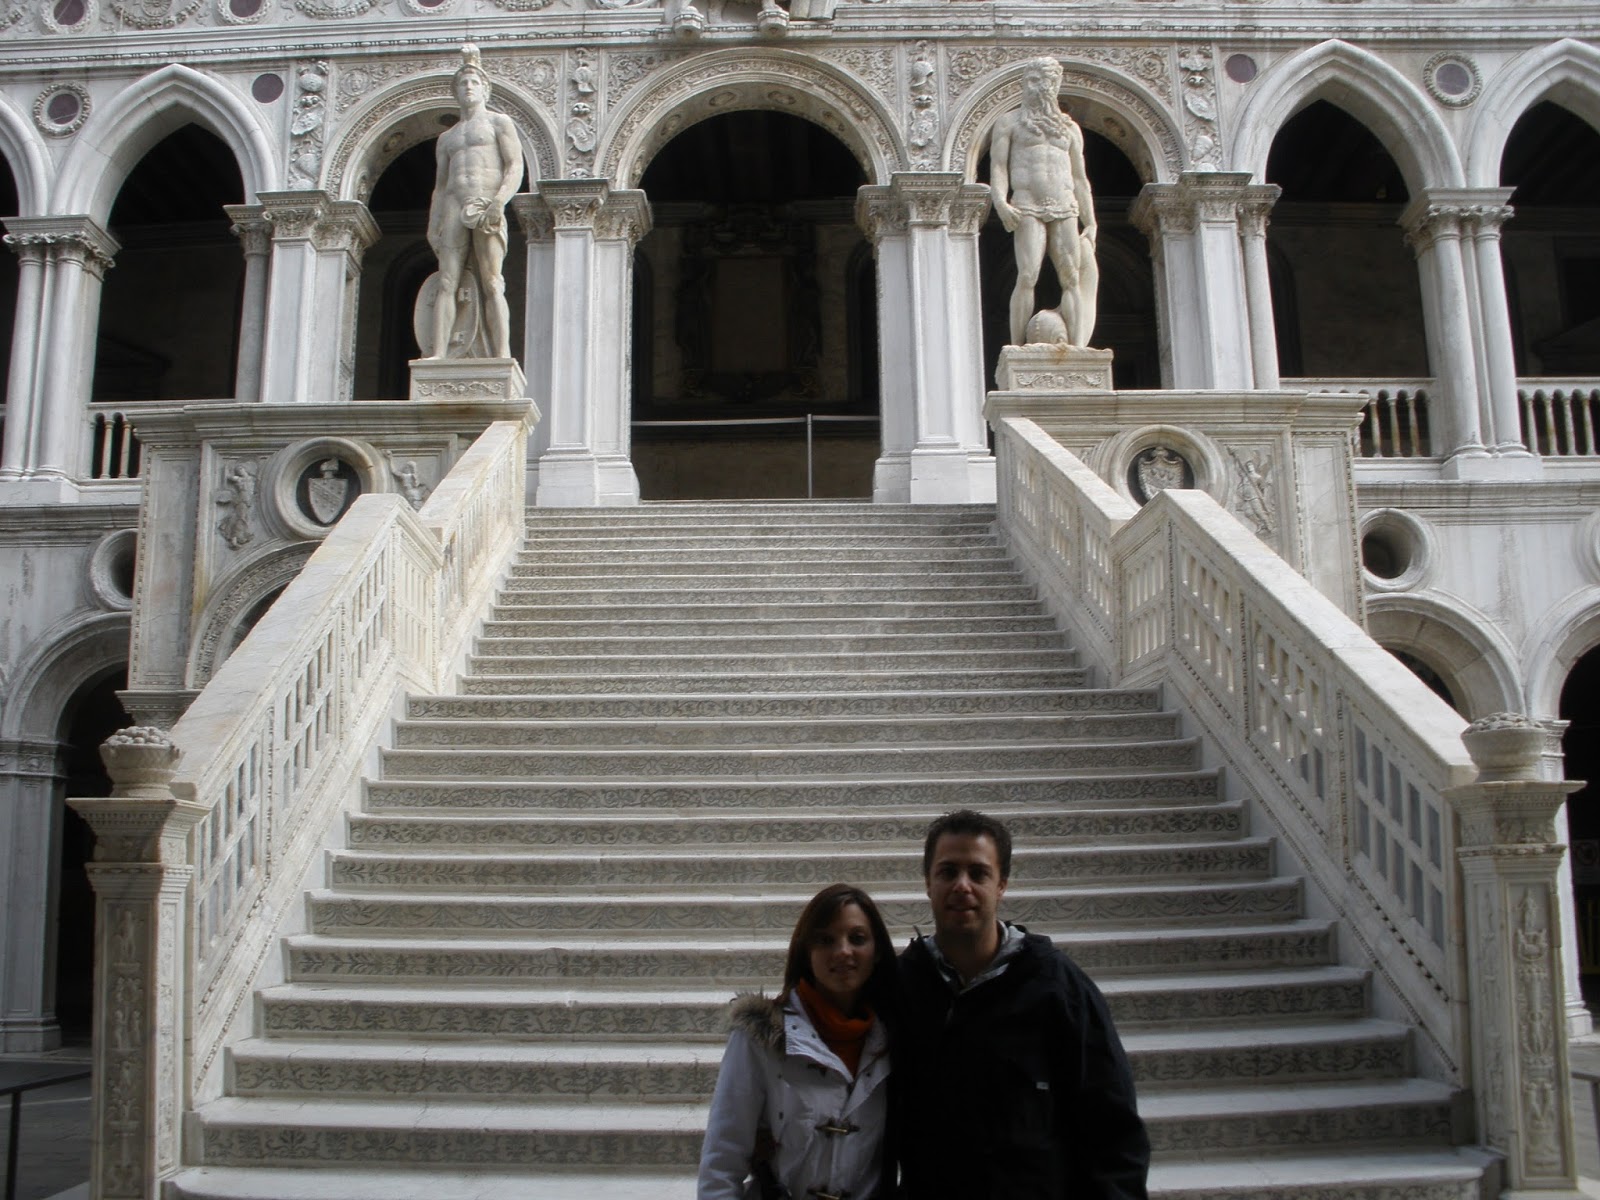 La Escalera de los Gigantes, se encuentra en el patio del Palacio Ducal